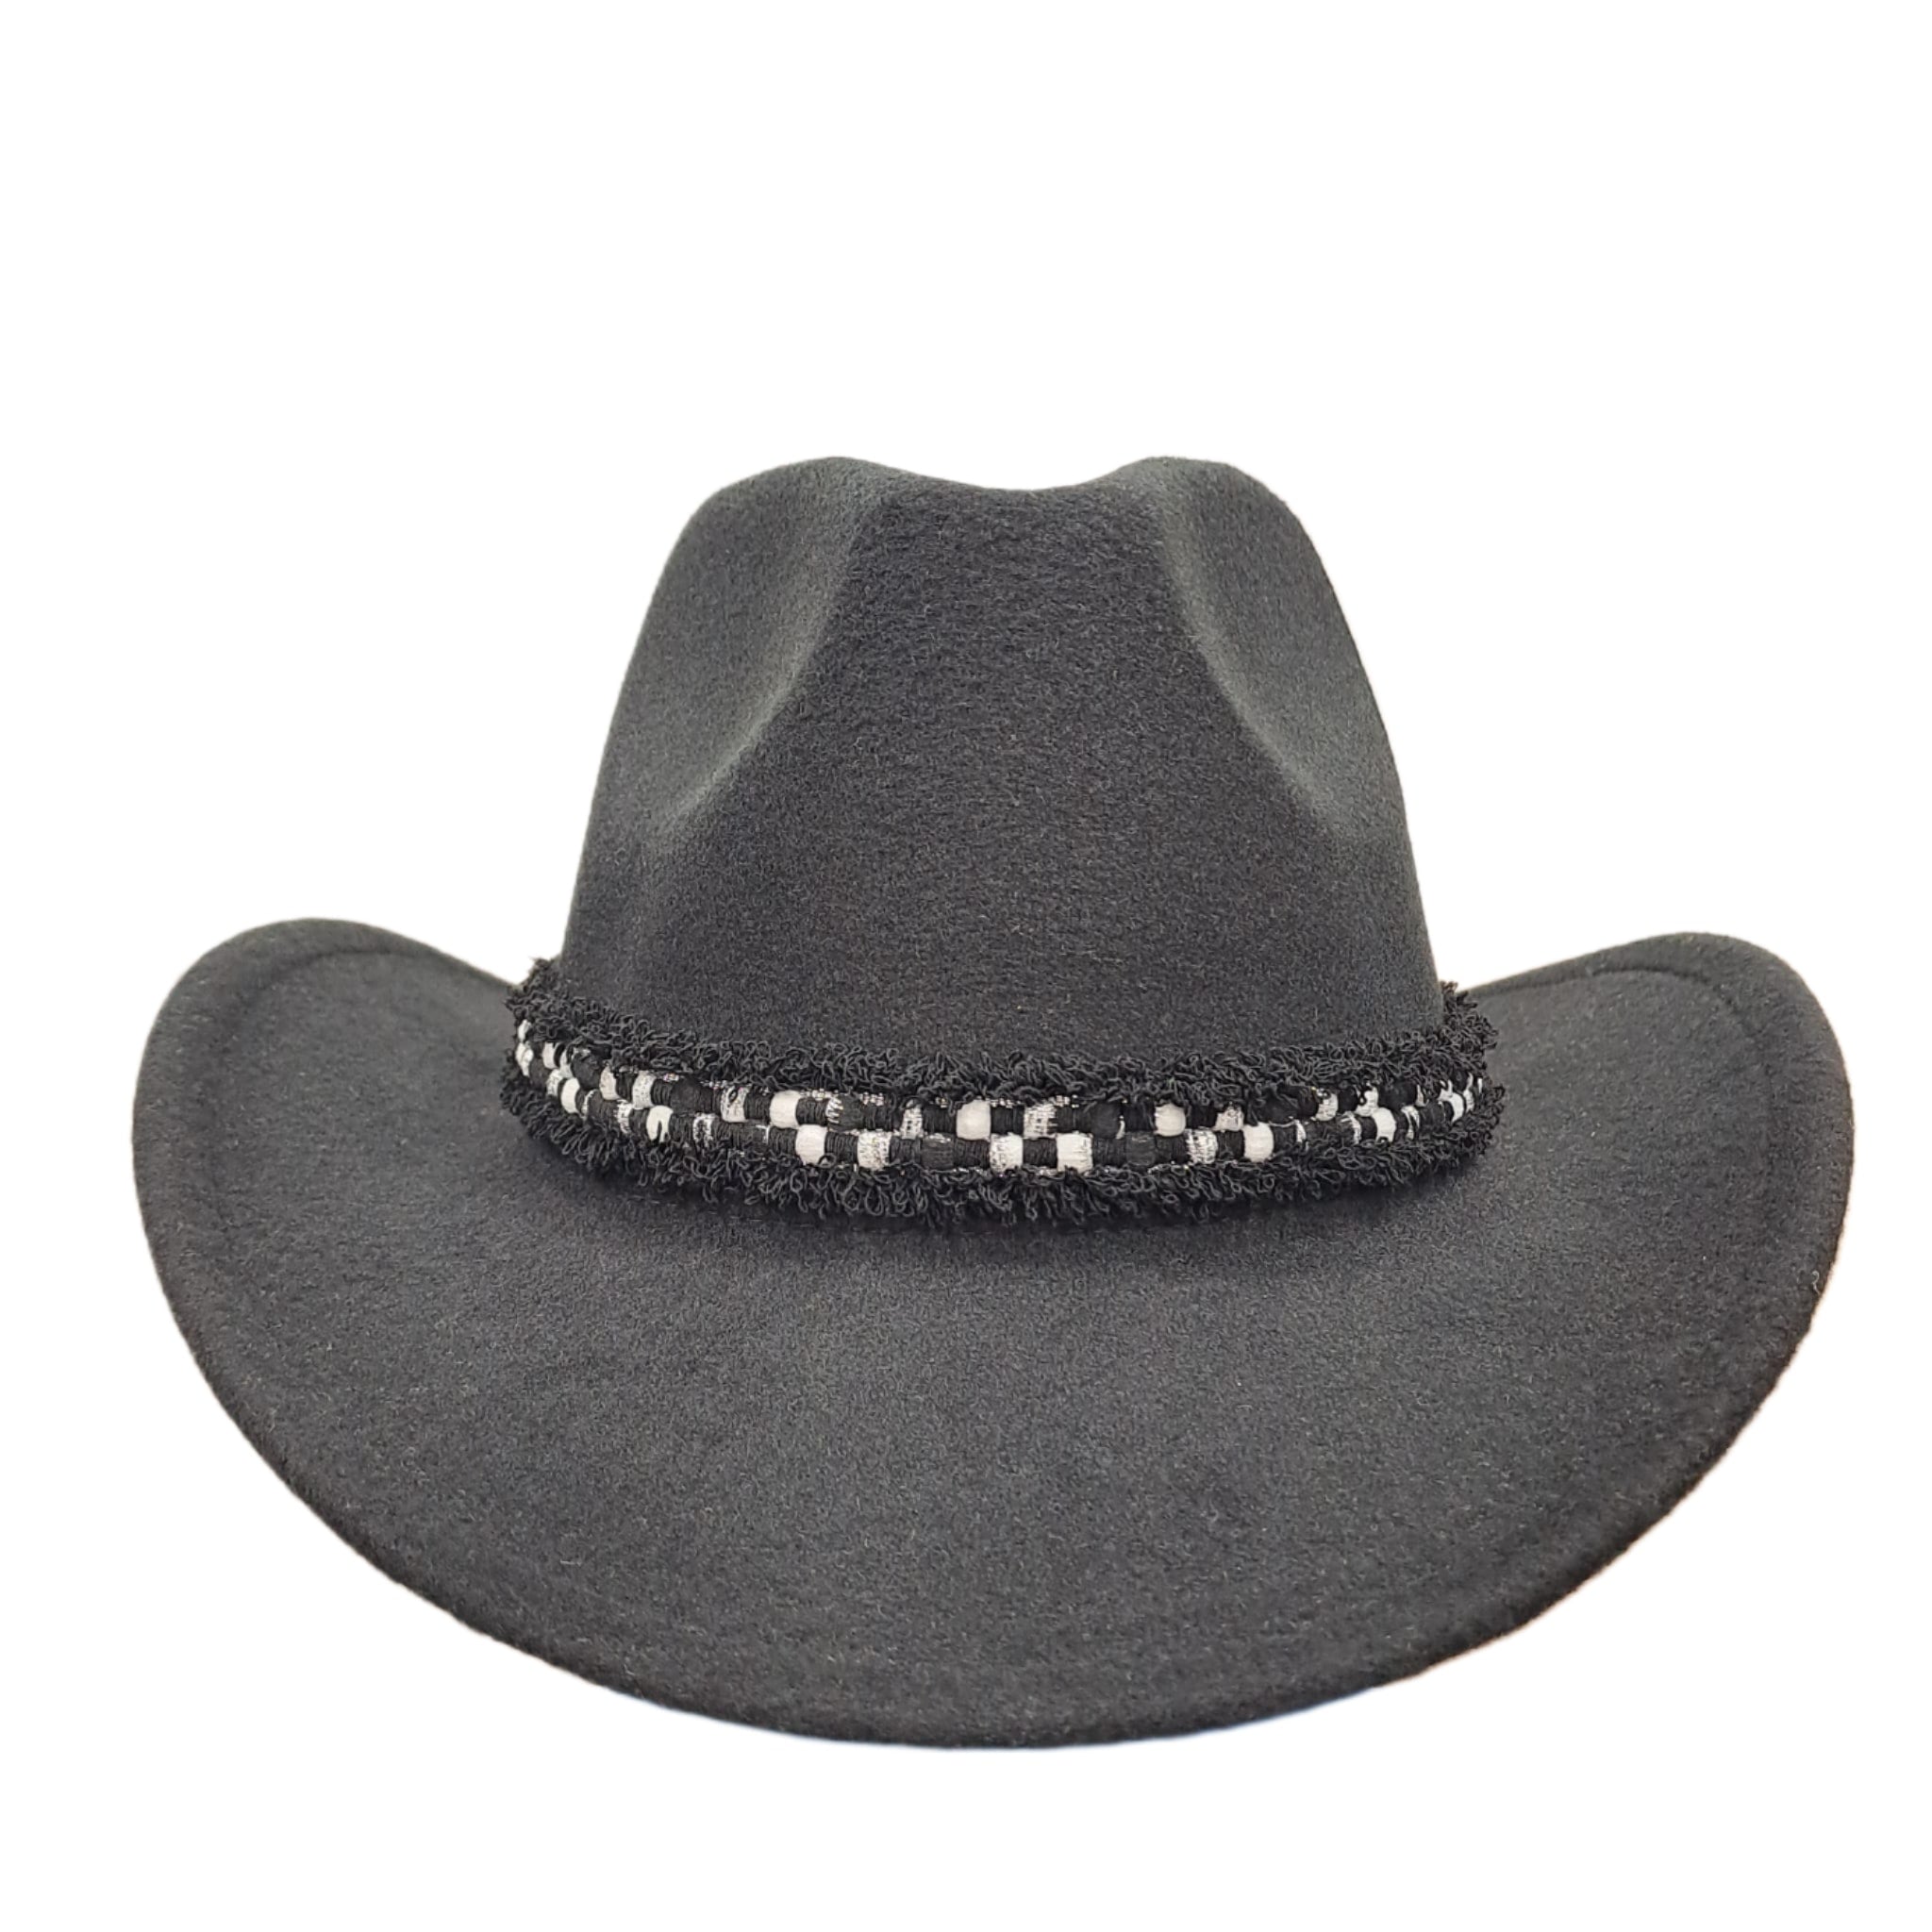 Palarie neagra, stil cowboy, handmade, reglabila, cu accesoriu detasabil, Sigve